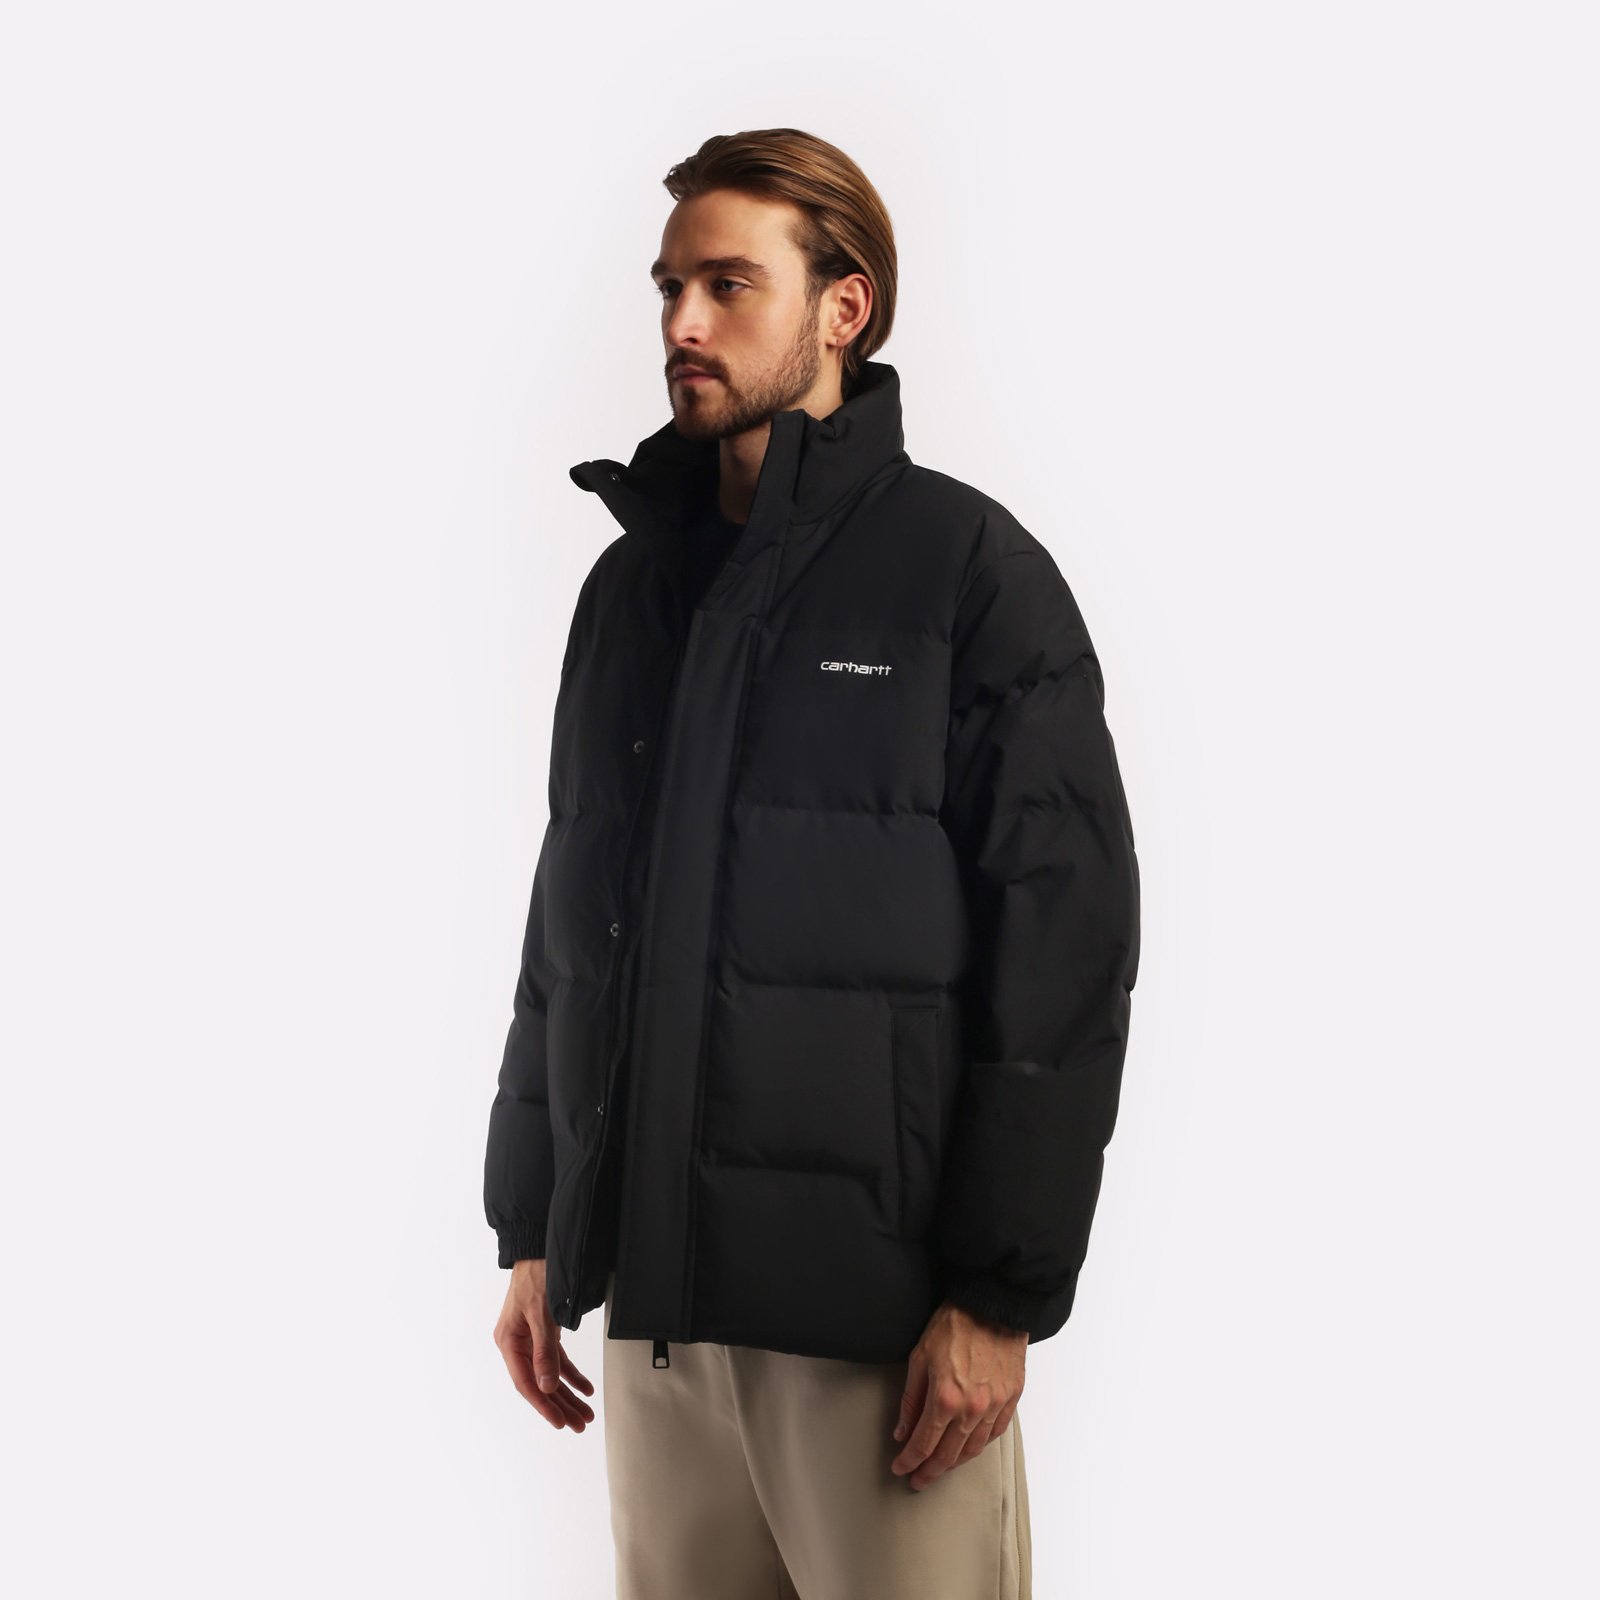 мужская черная куртка Carhartt WIP Danville Jacket I029450-black/wht - цена, описание, фото 3